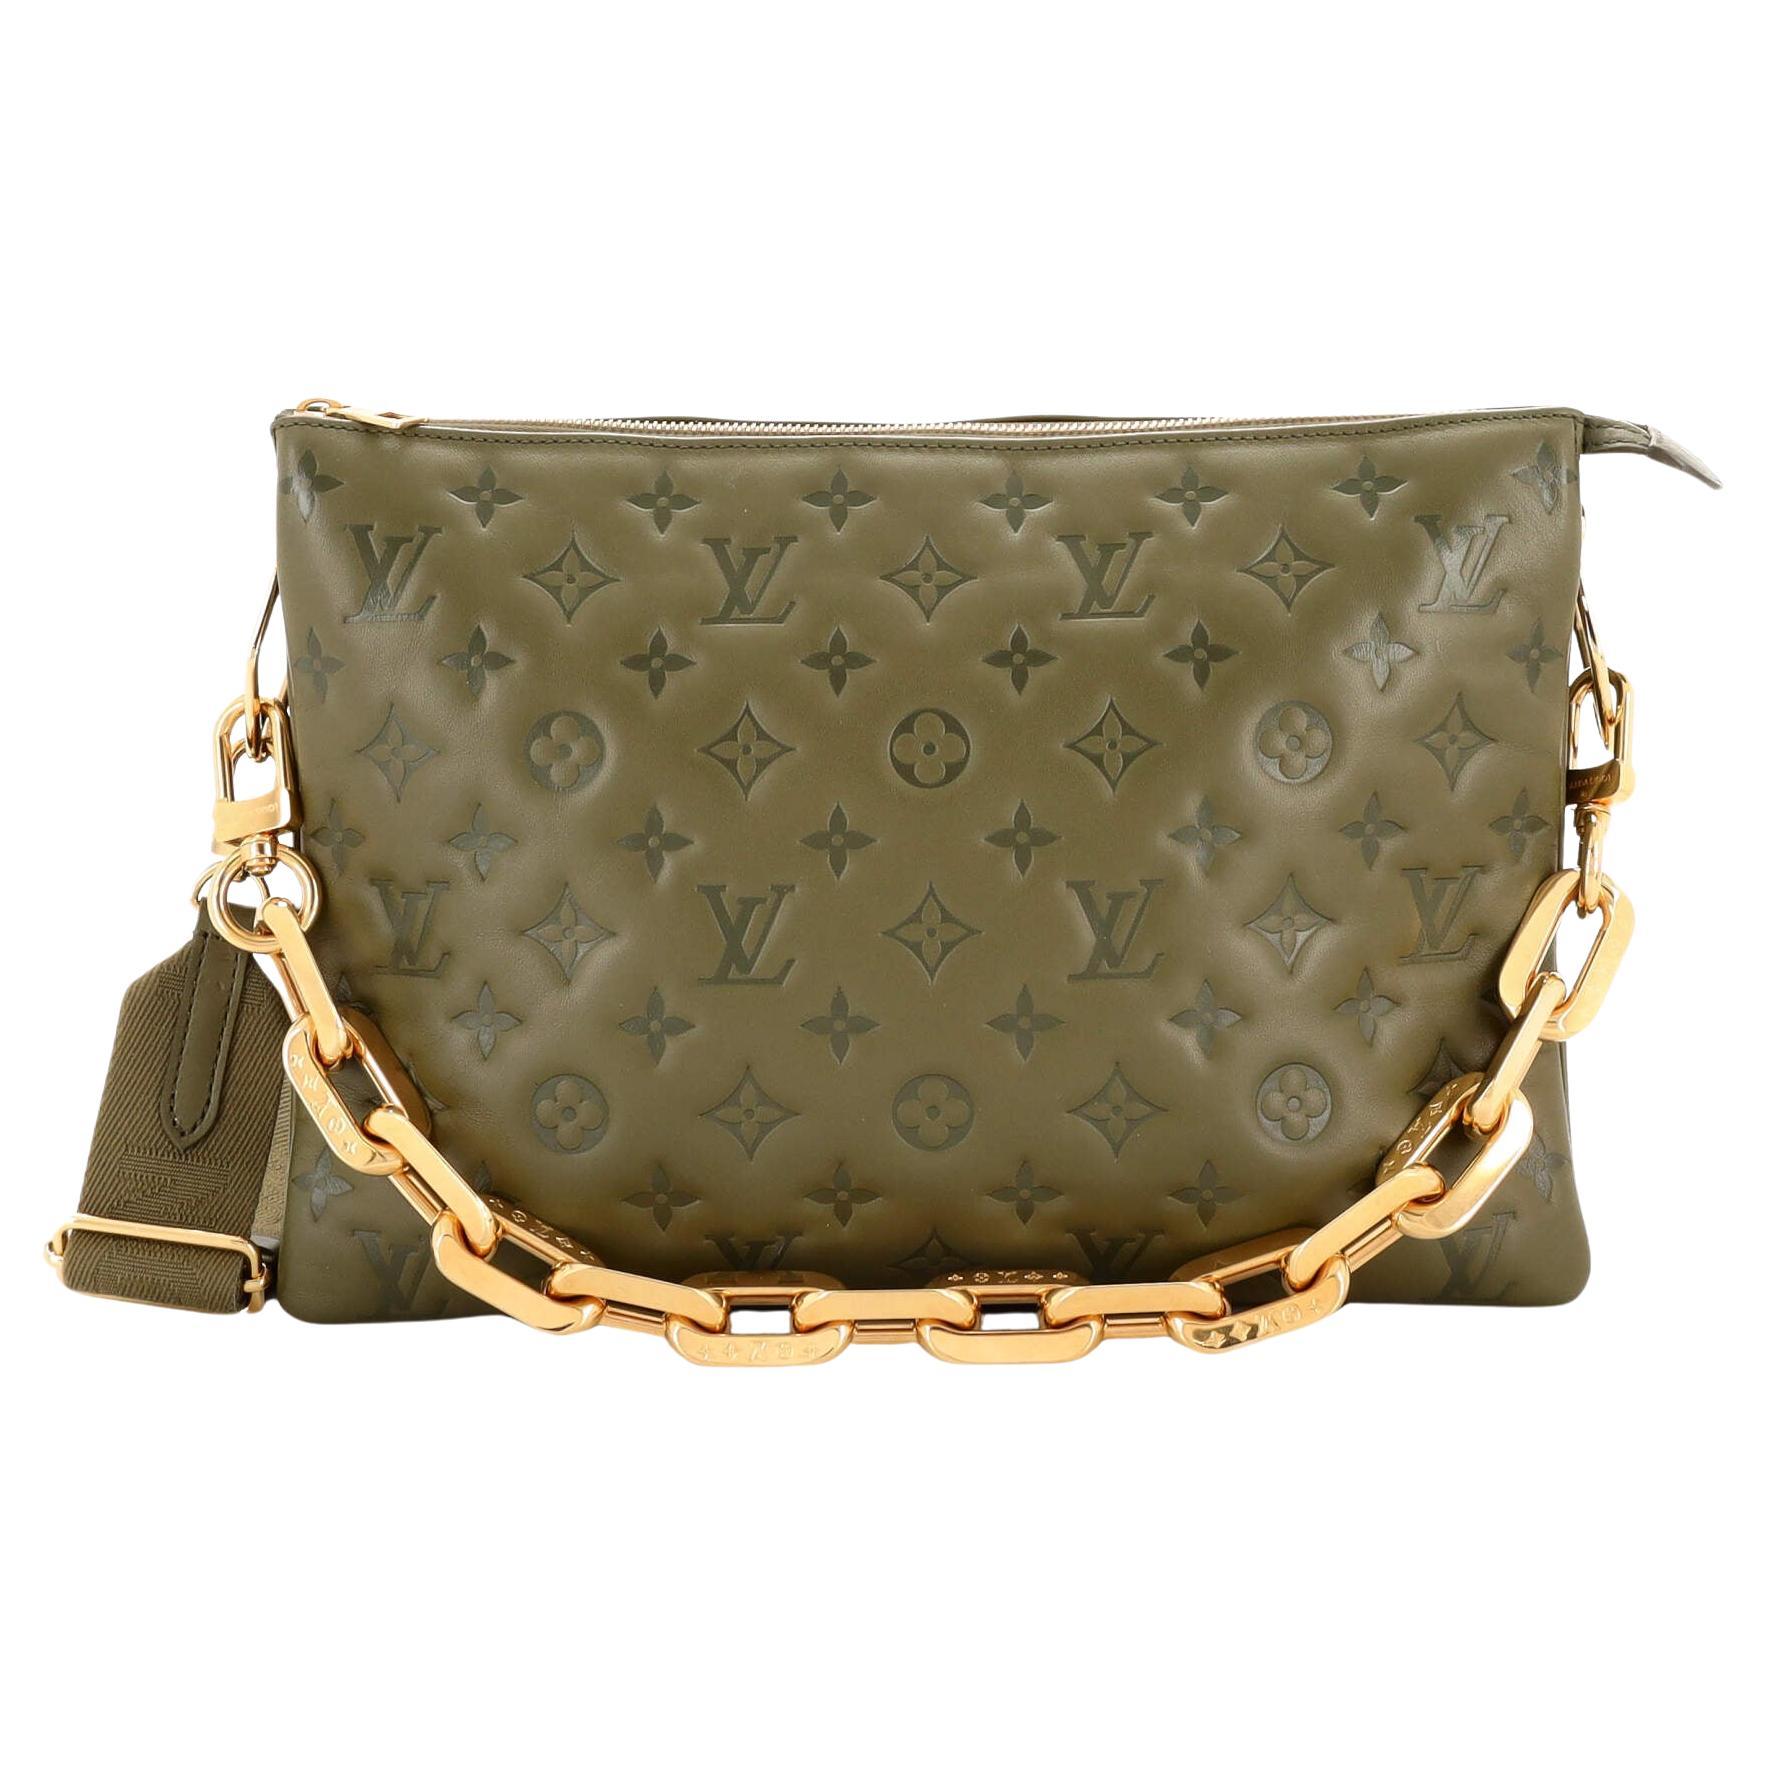 Louis-Vuitton-Set-of-11-Dust-Bag-Storage-Bag-Drawstring-Bag-Brown